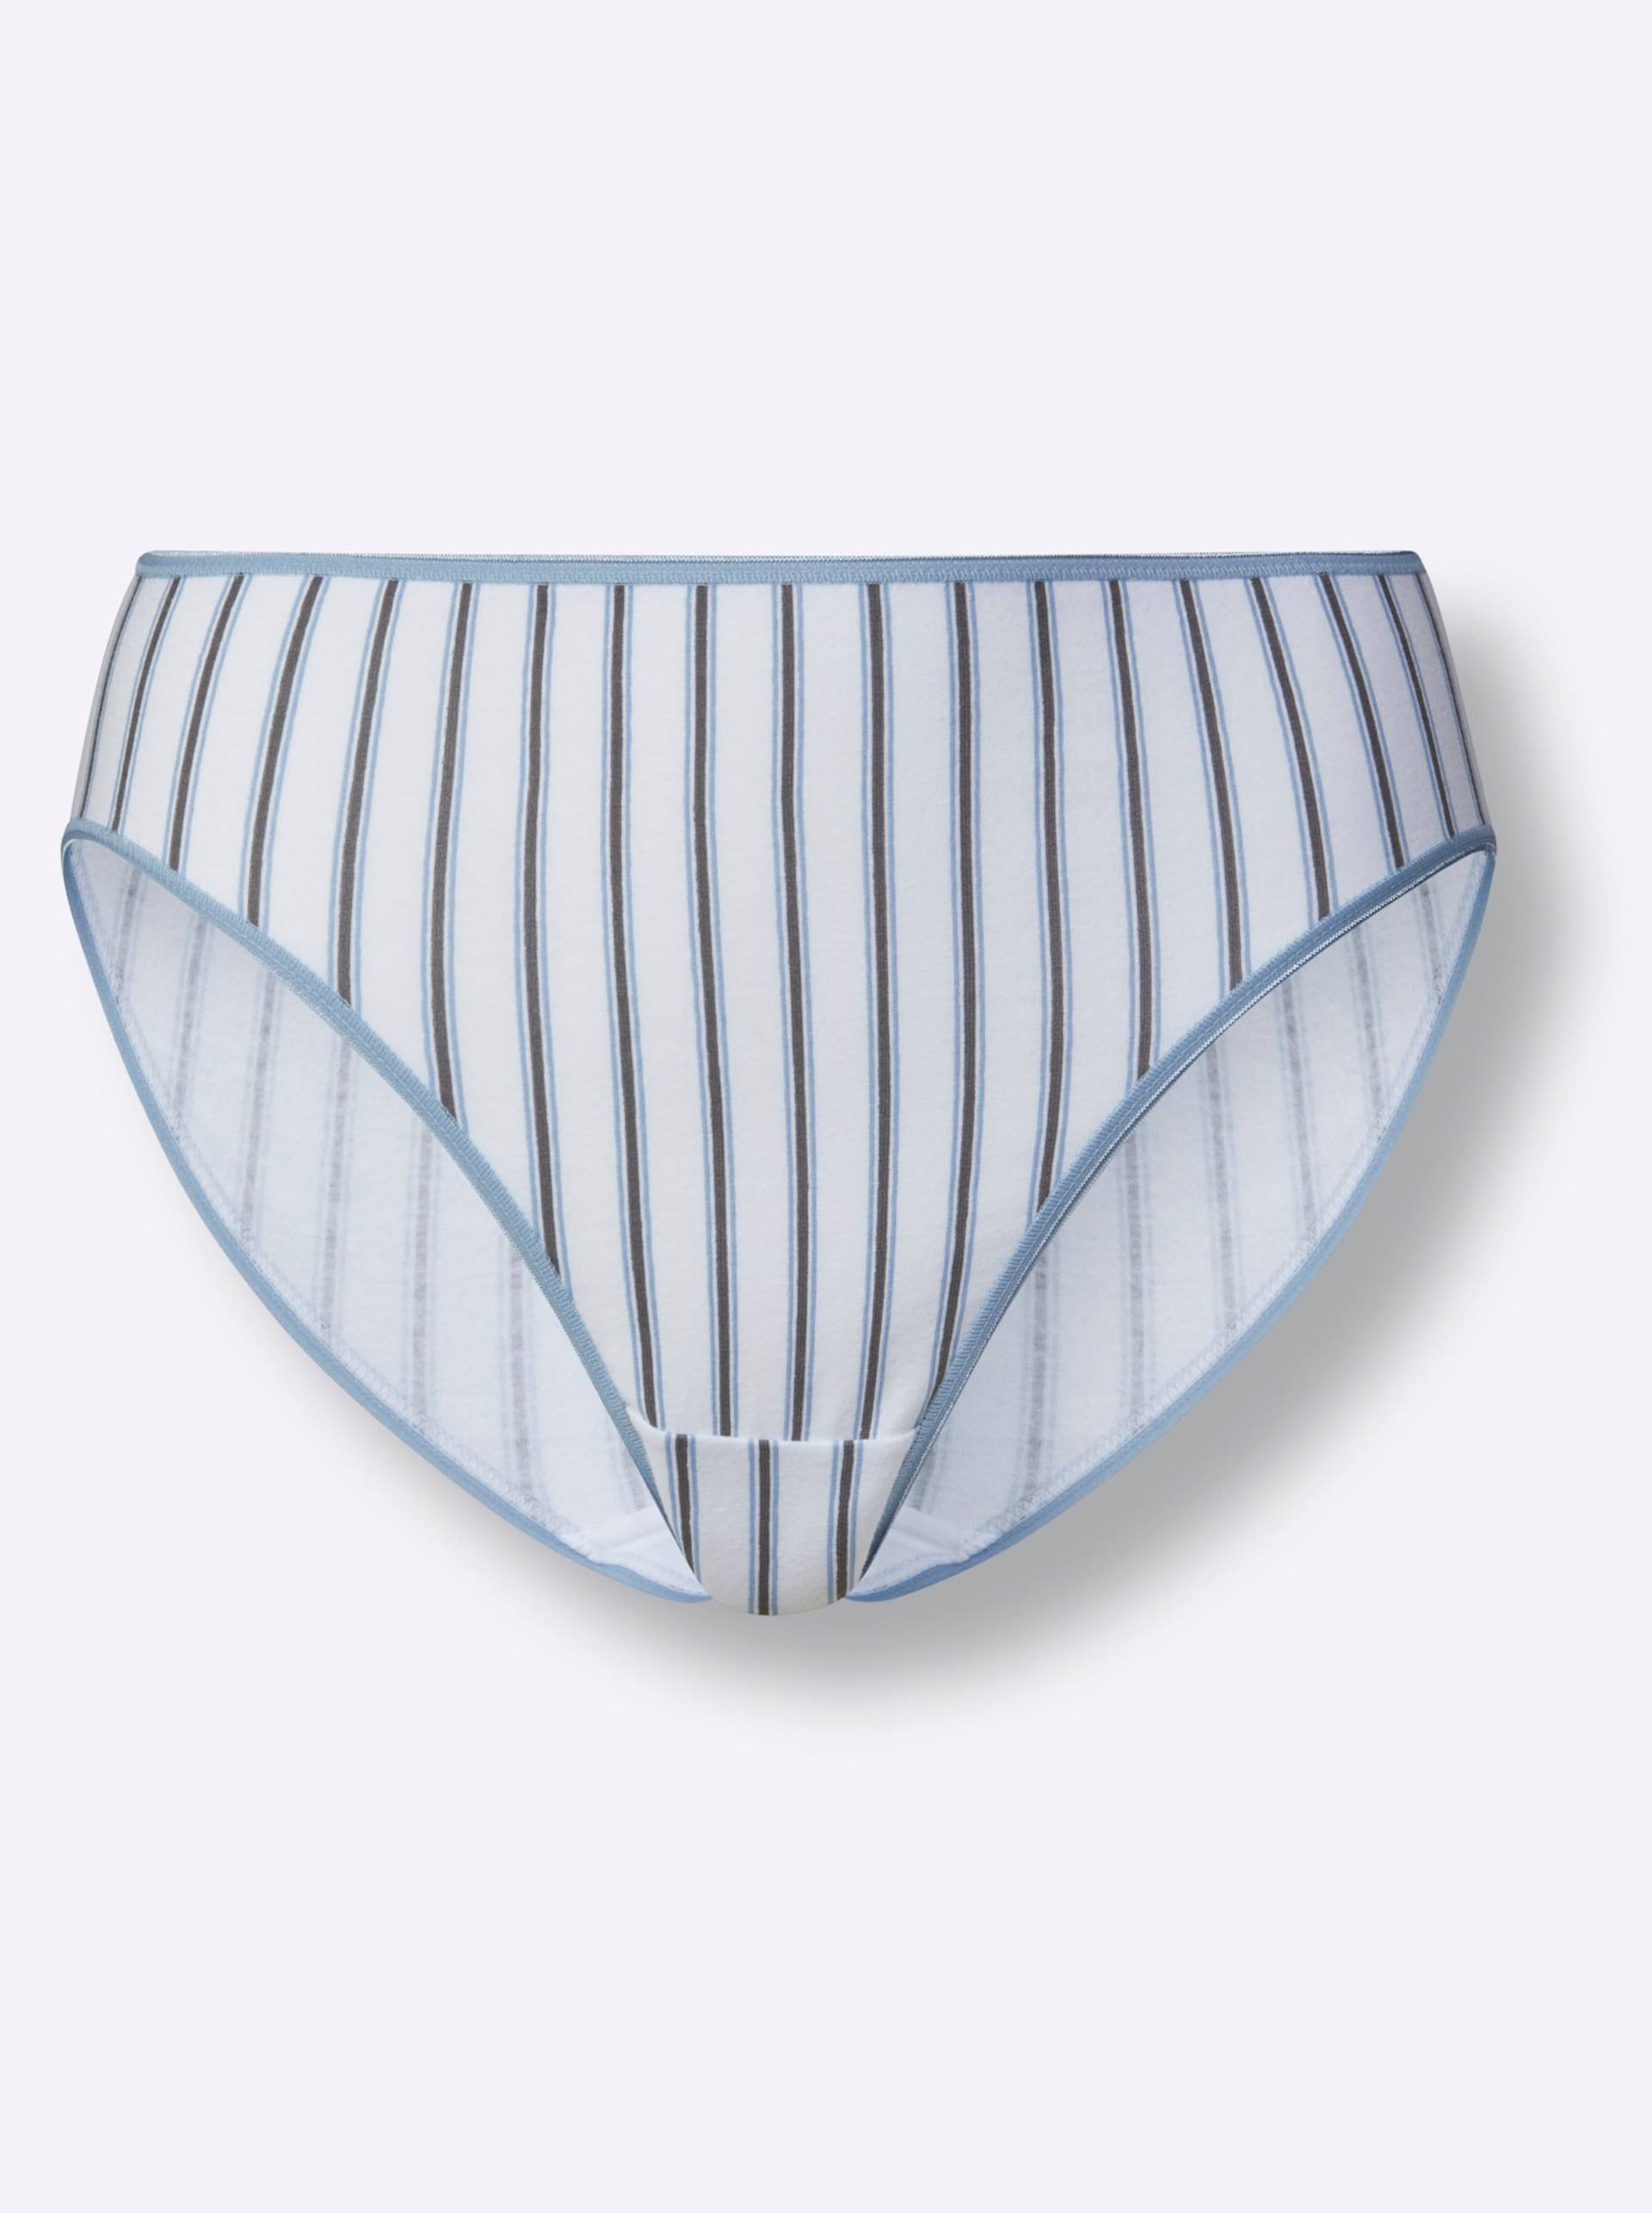 Jazzpants in bleu + bleu-gestreift von wäschepur